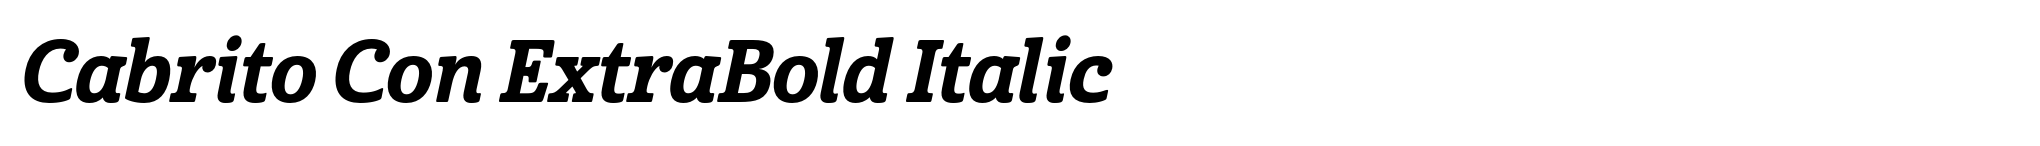 Cabrito Con ExtraBold Italic image